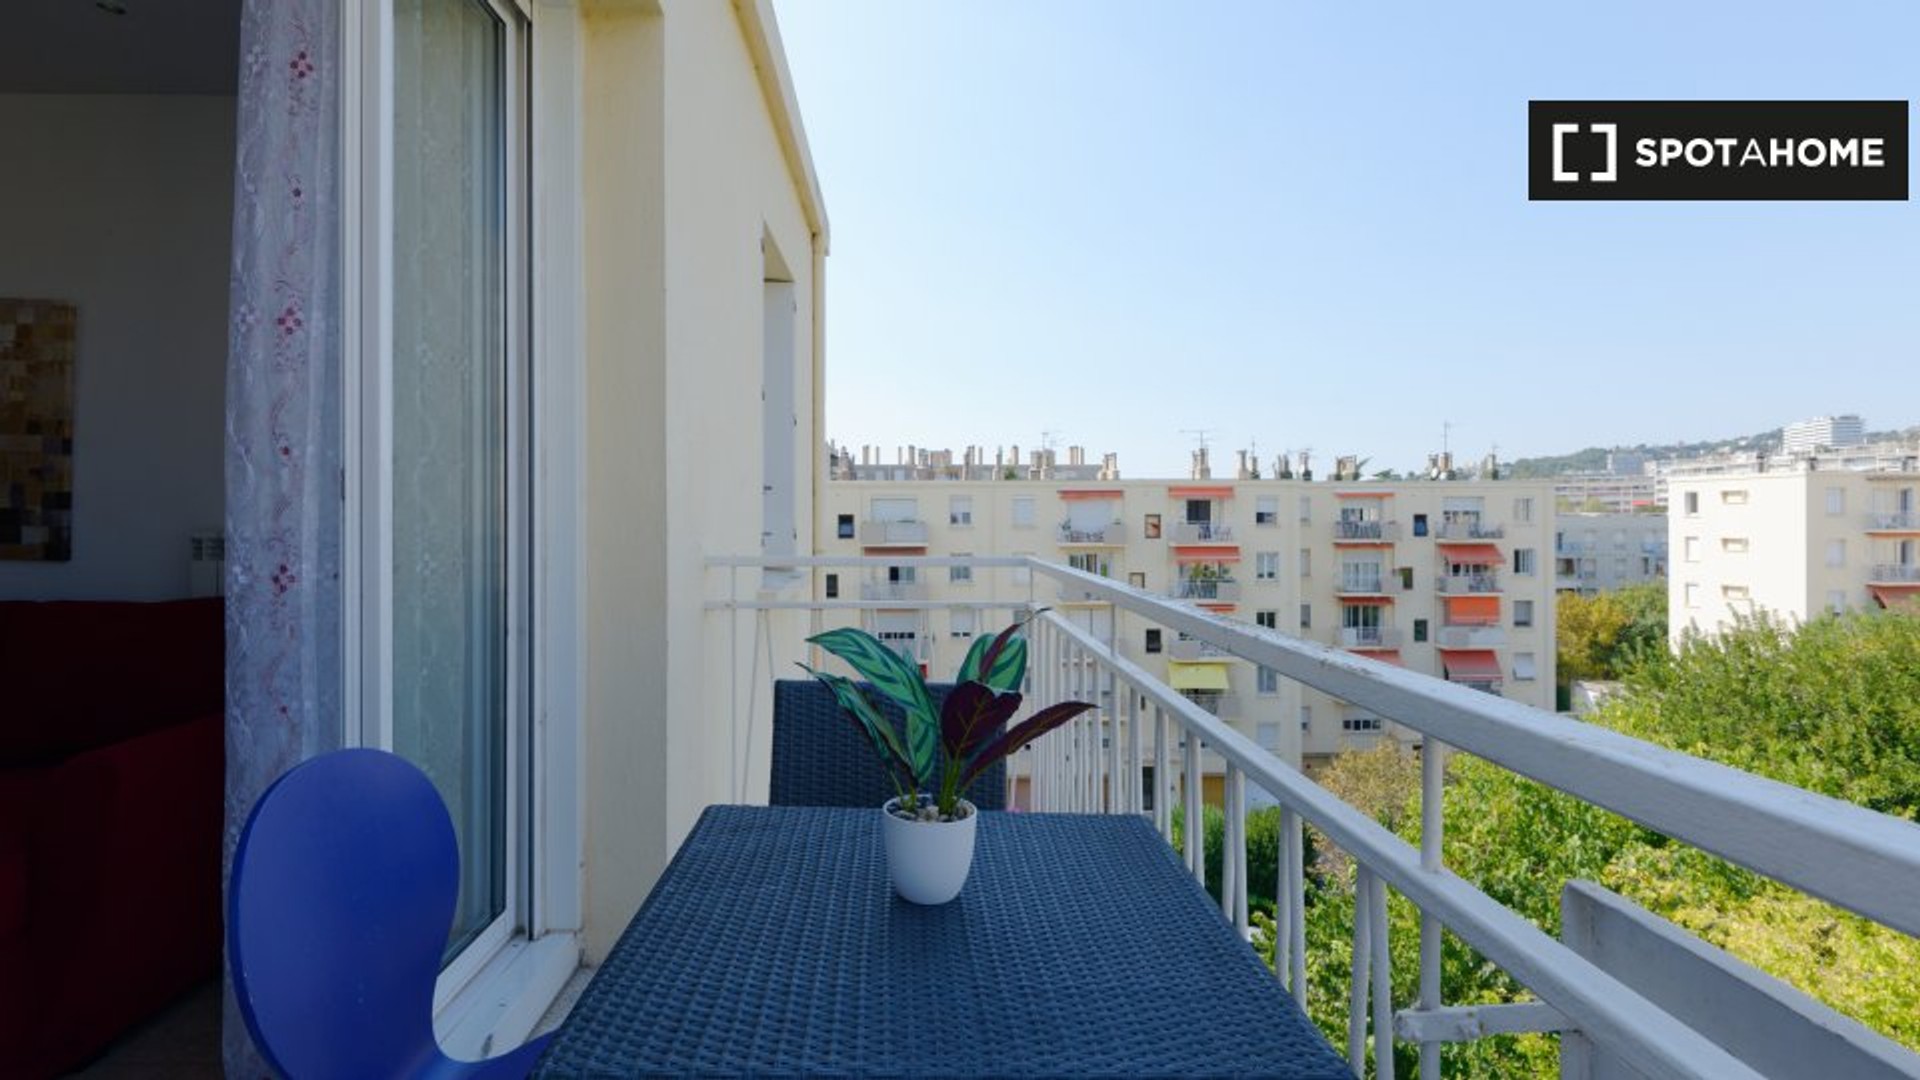 Moderne und helle Wohnung in Marseille